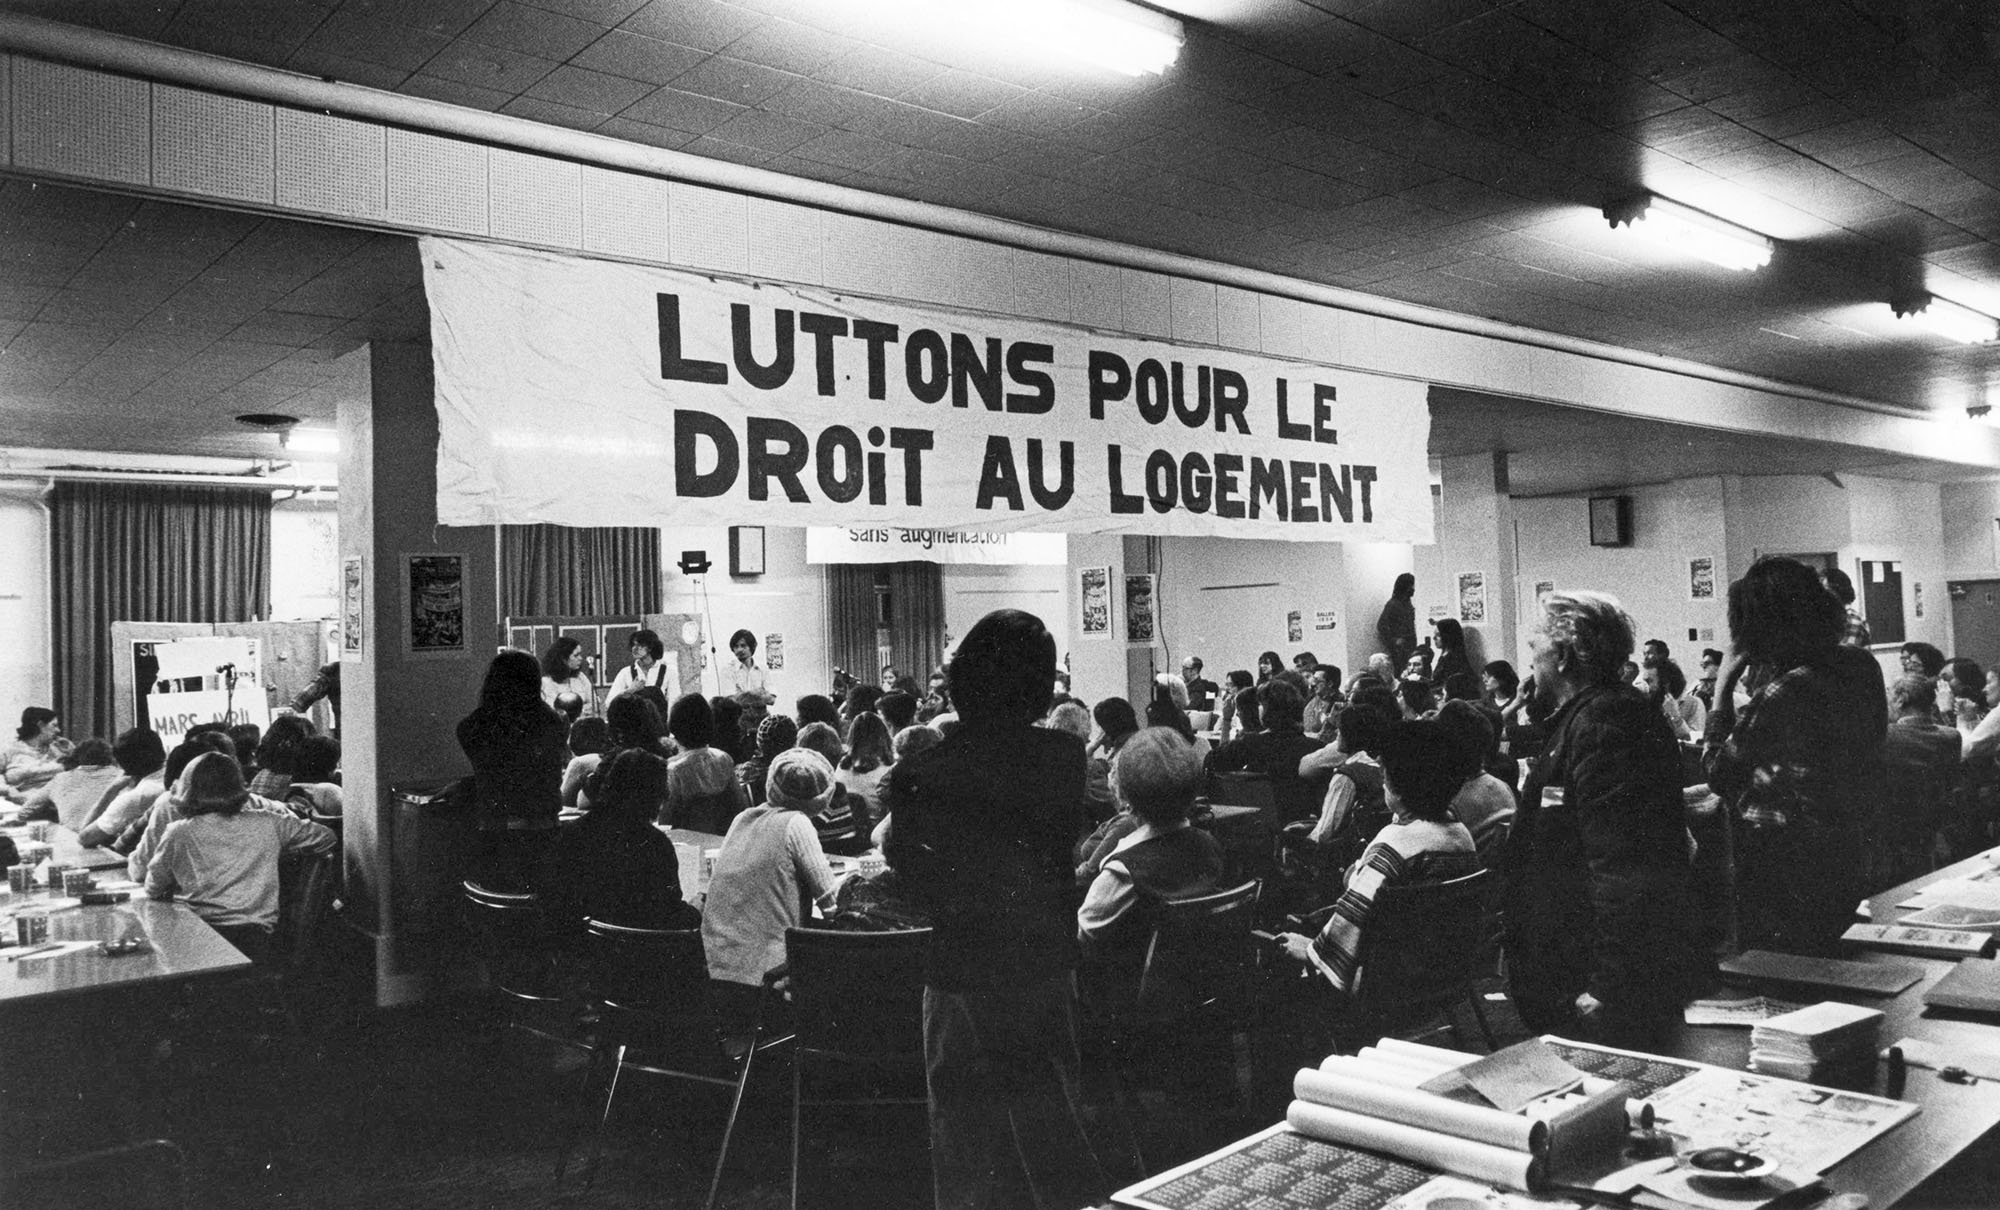 Une cinquantaine de personnes sont assises ou debout, de dos, dans une salle. Une affiche, sur laquelle on peut lire « Luttons pour le droit au logement », est suspendue au plafond.